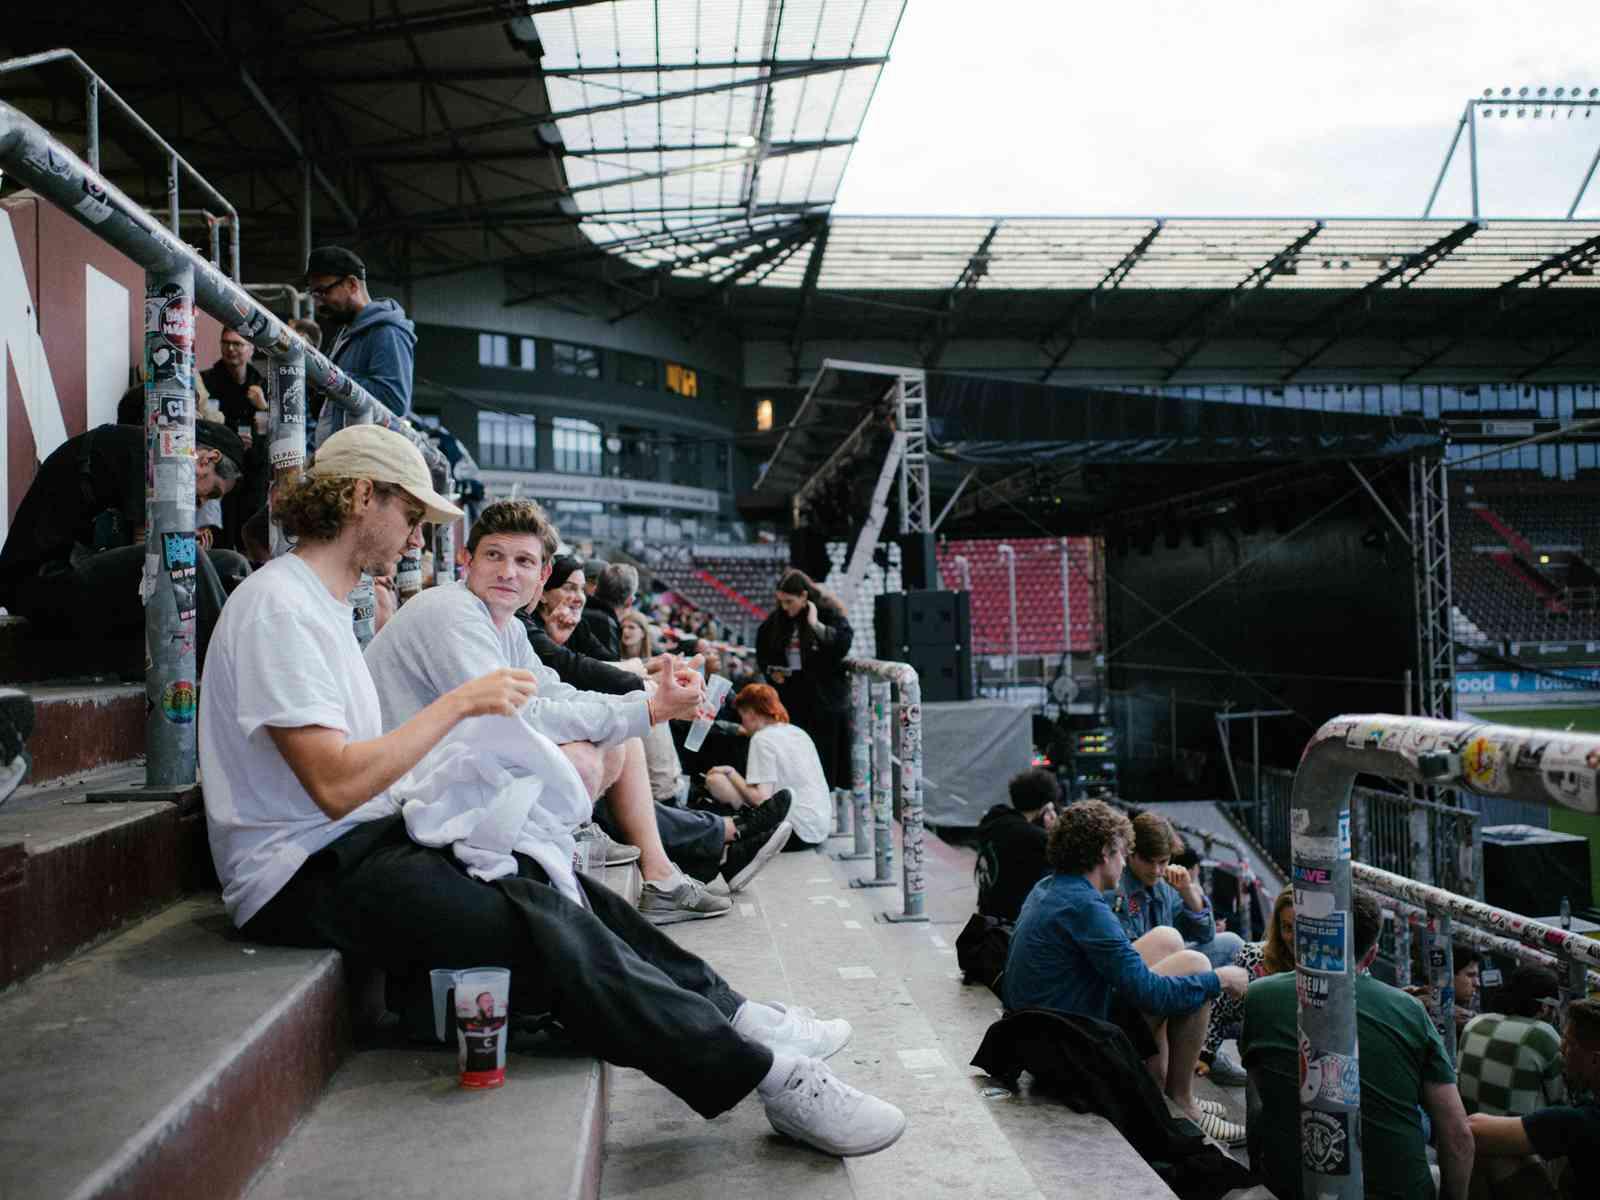 Personen sitzen im Stadion